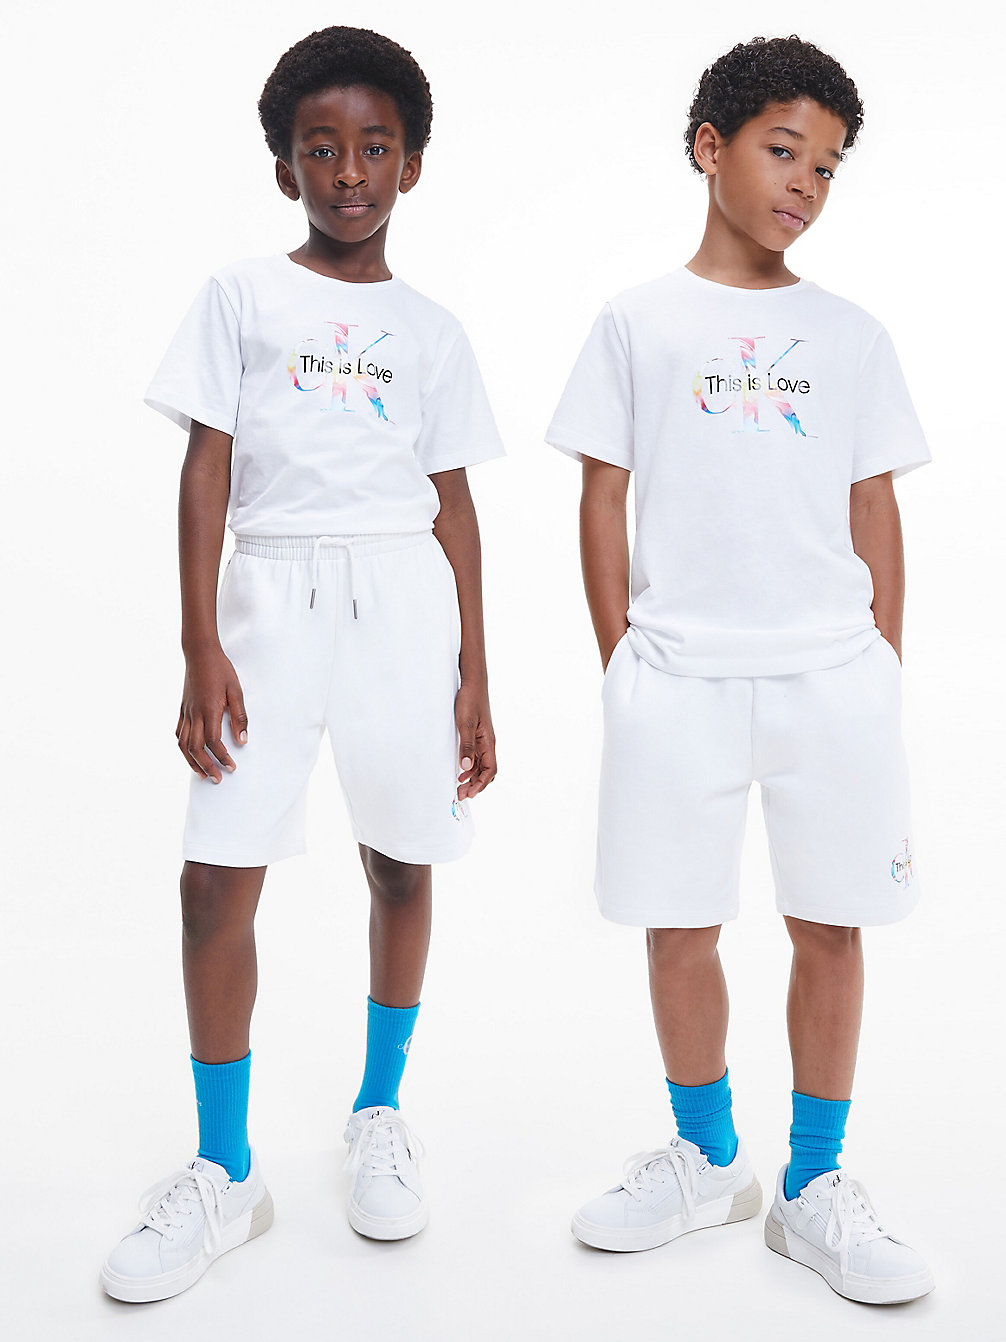 BRIGHT WHITE > Unisex-Monogramm-T-Shirt - Pride > undefined kids unisex - Calvin Klein